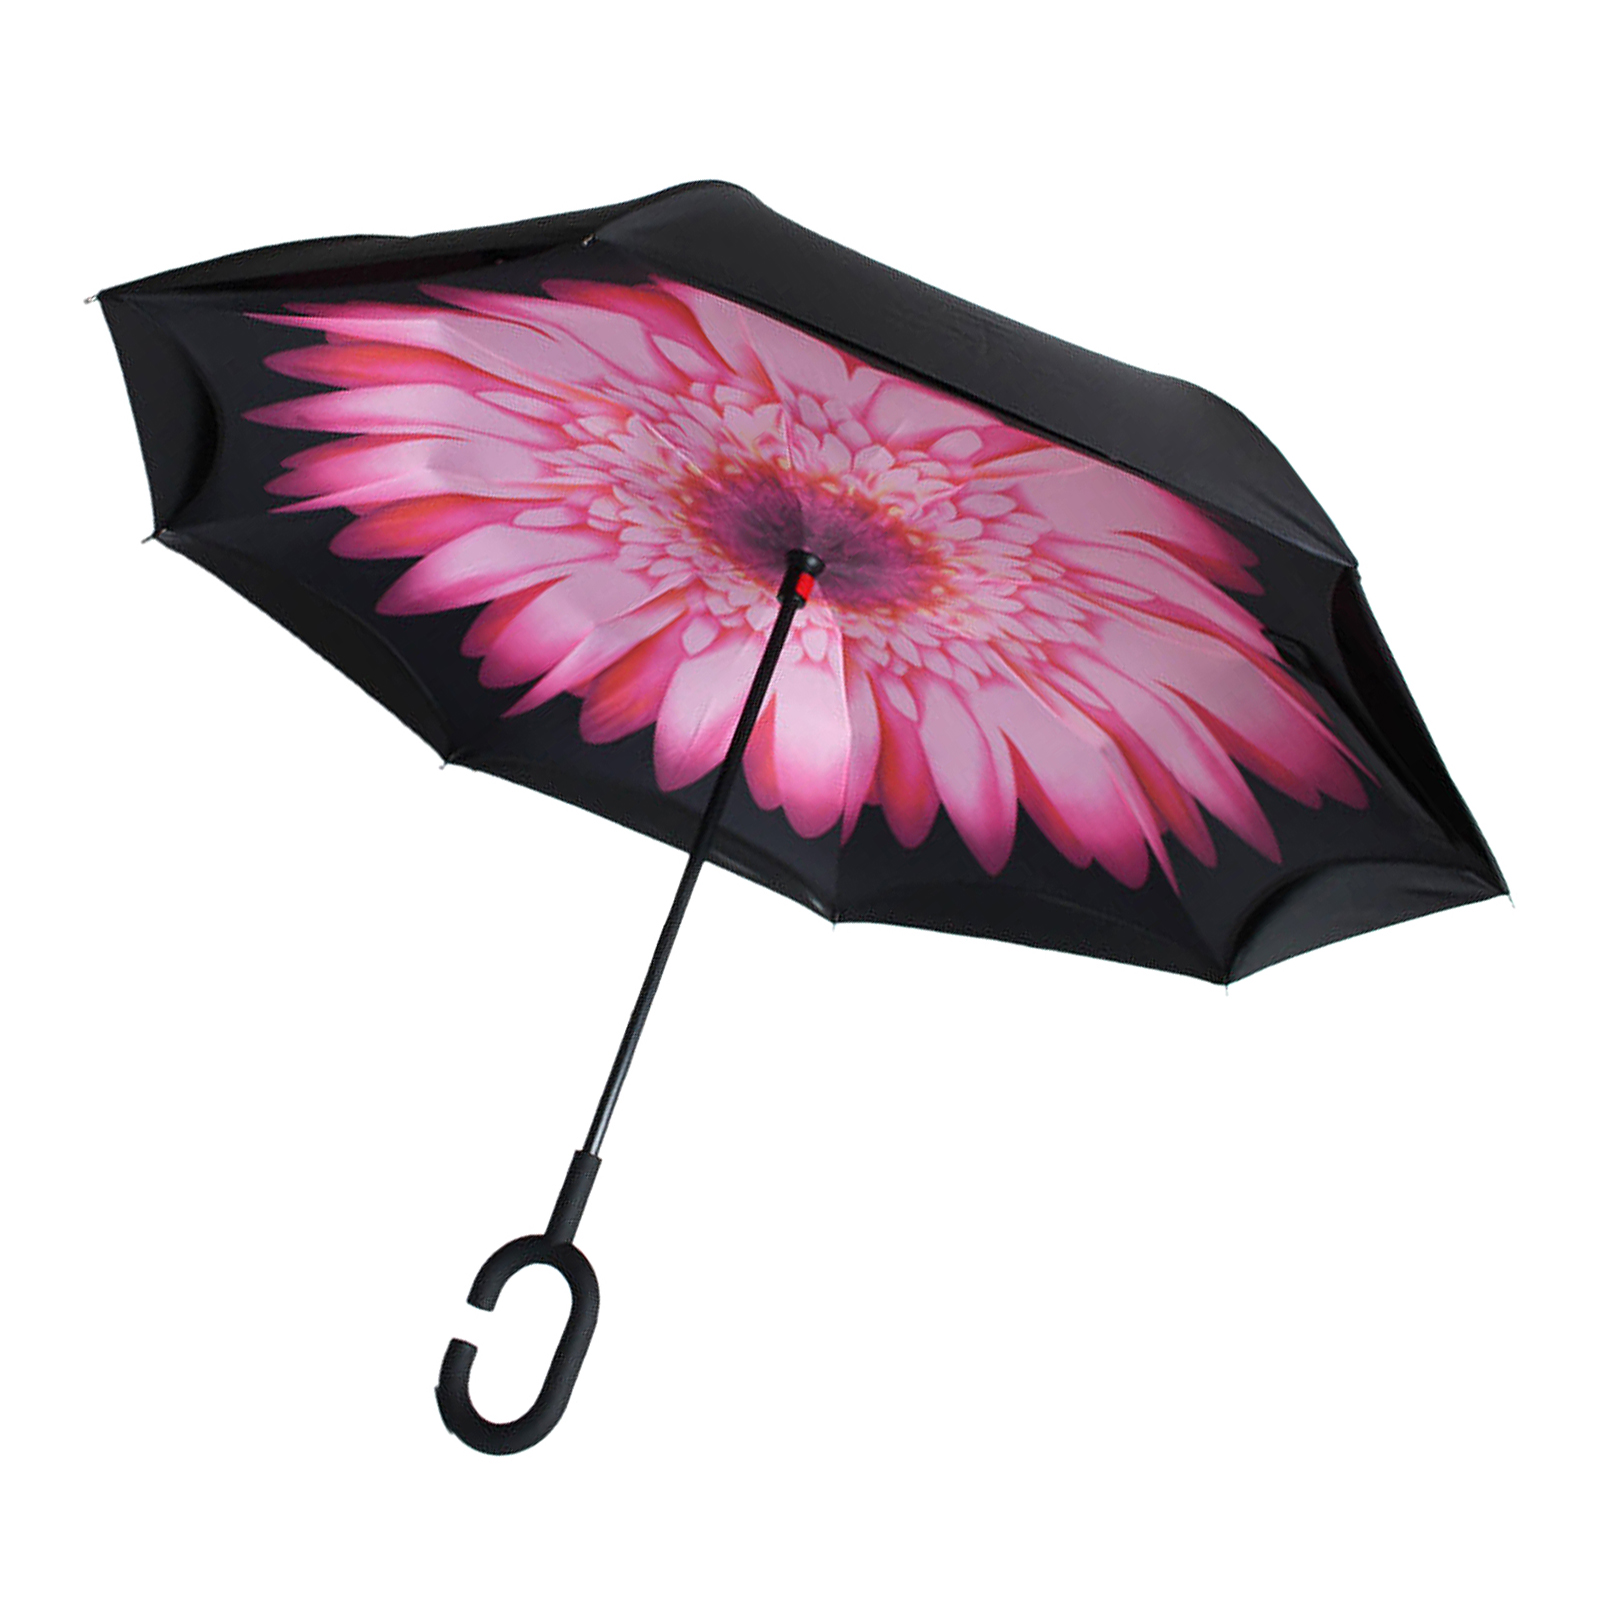 傘 逆さま傘 日傘 晴雨兼用 折り畳み傘 レディース メンズ UPF50以上 